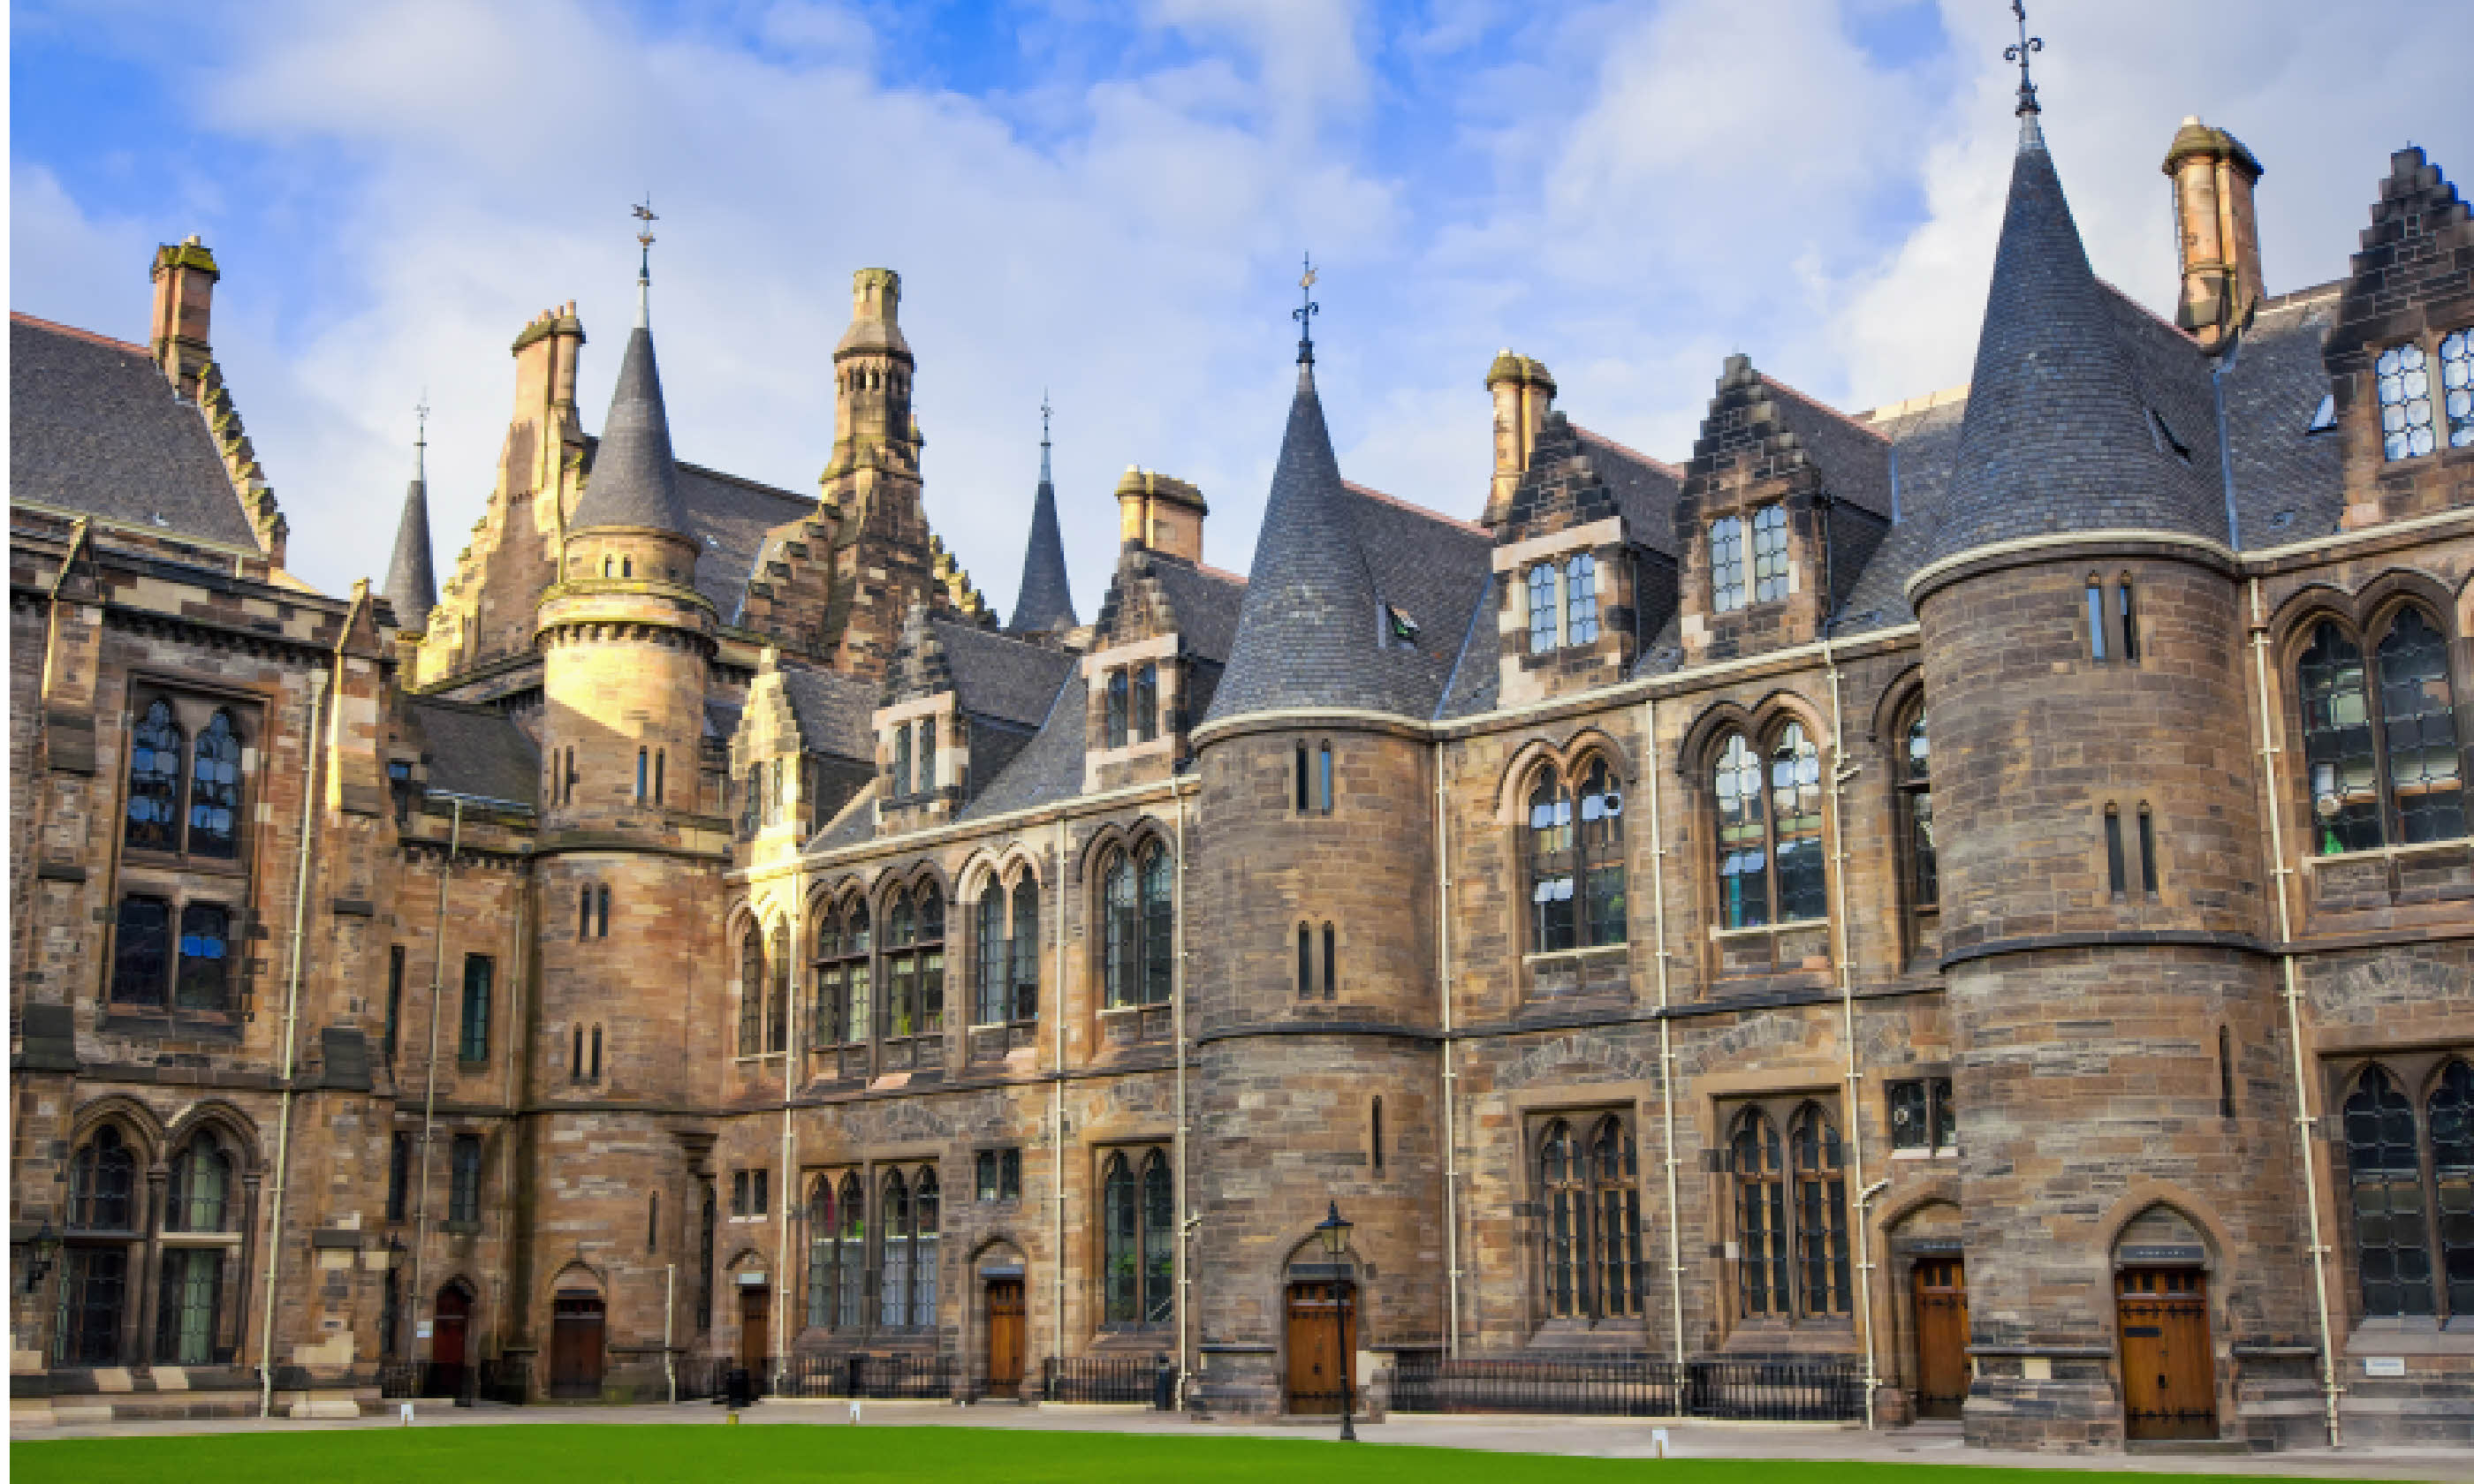 University of Glasgow (Shutterstock: see below)